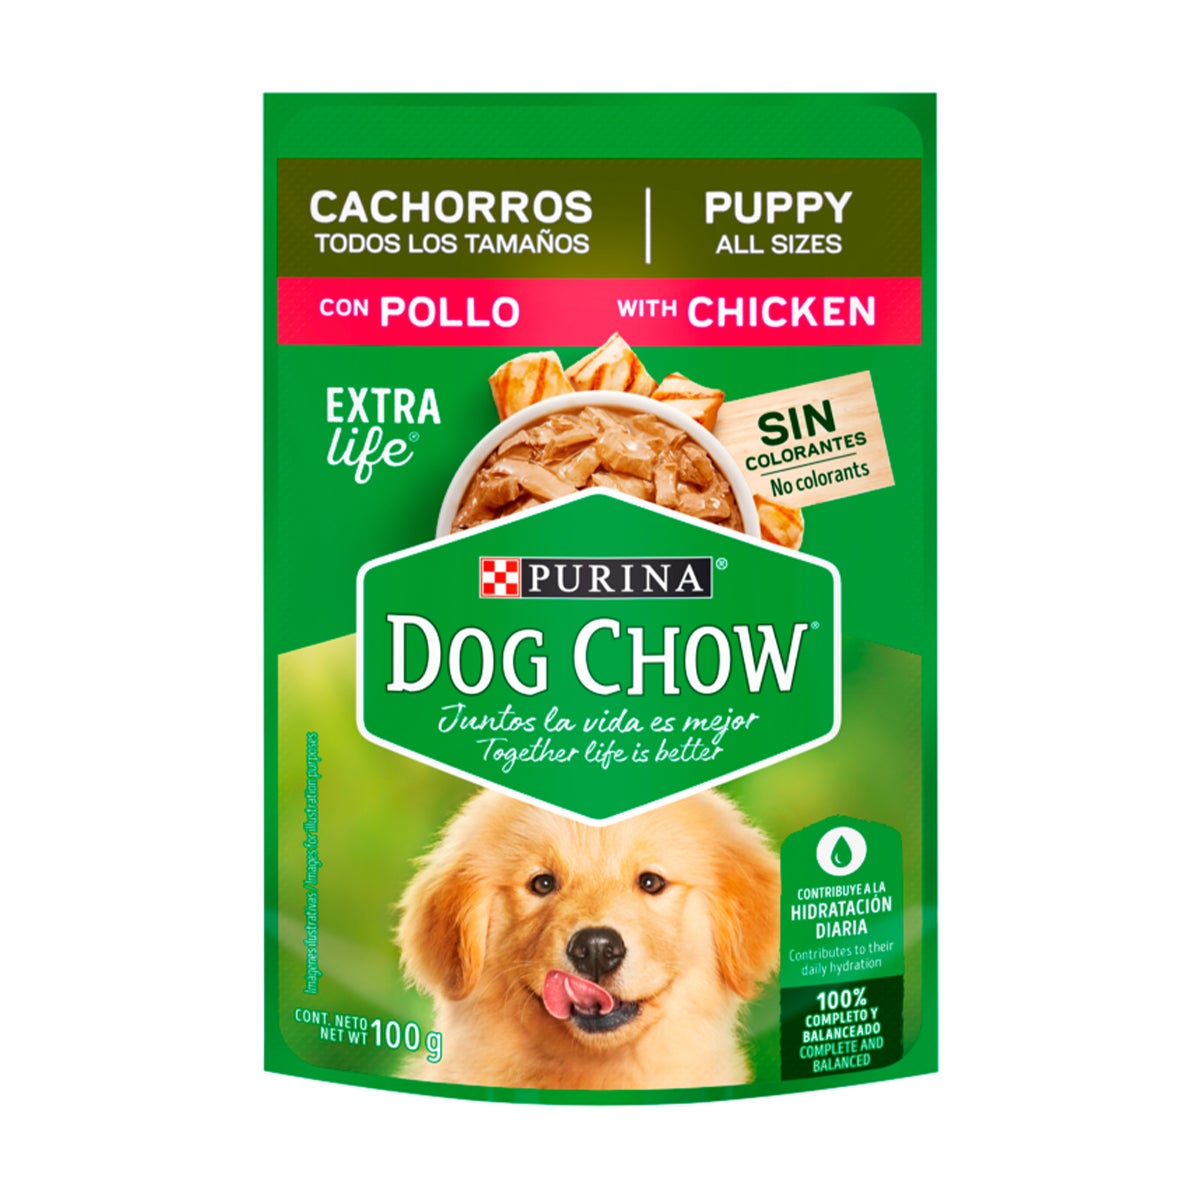 purina-dog-chow-alimento-h%C3%BAmedo-cachorros-todos-los-tama%C3%B1os-con-pollo.jpg